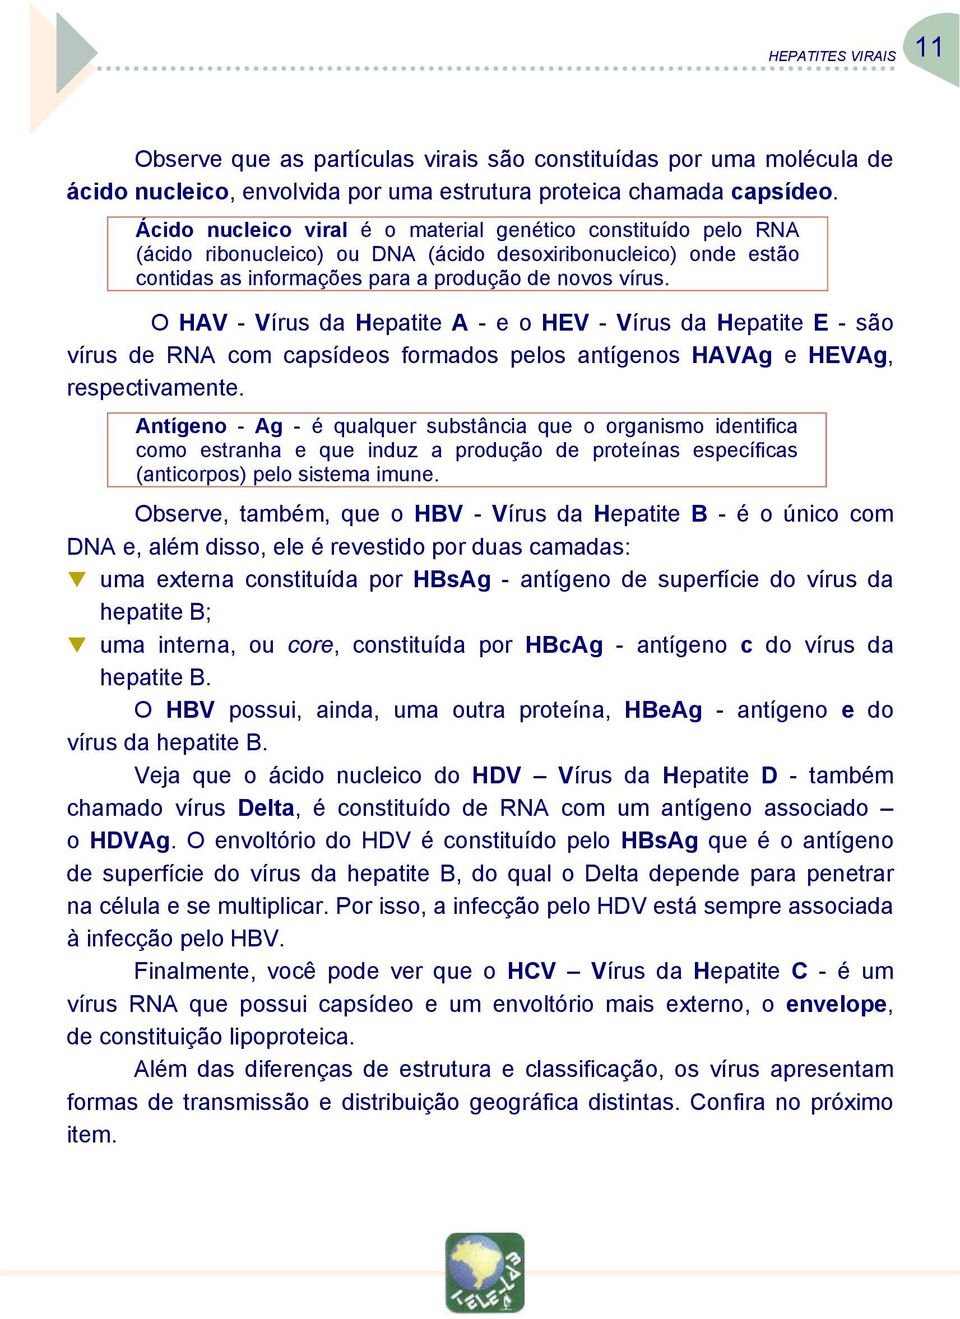 O HAV - Vírus da Hepatite A - e o HEV - Vírus da Hepatite E - são vírus de RNA com capsídeos formados pelos antígenos HAVAg e HEVAg, respectivamente.